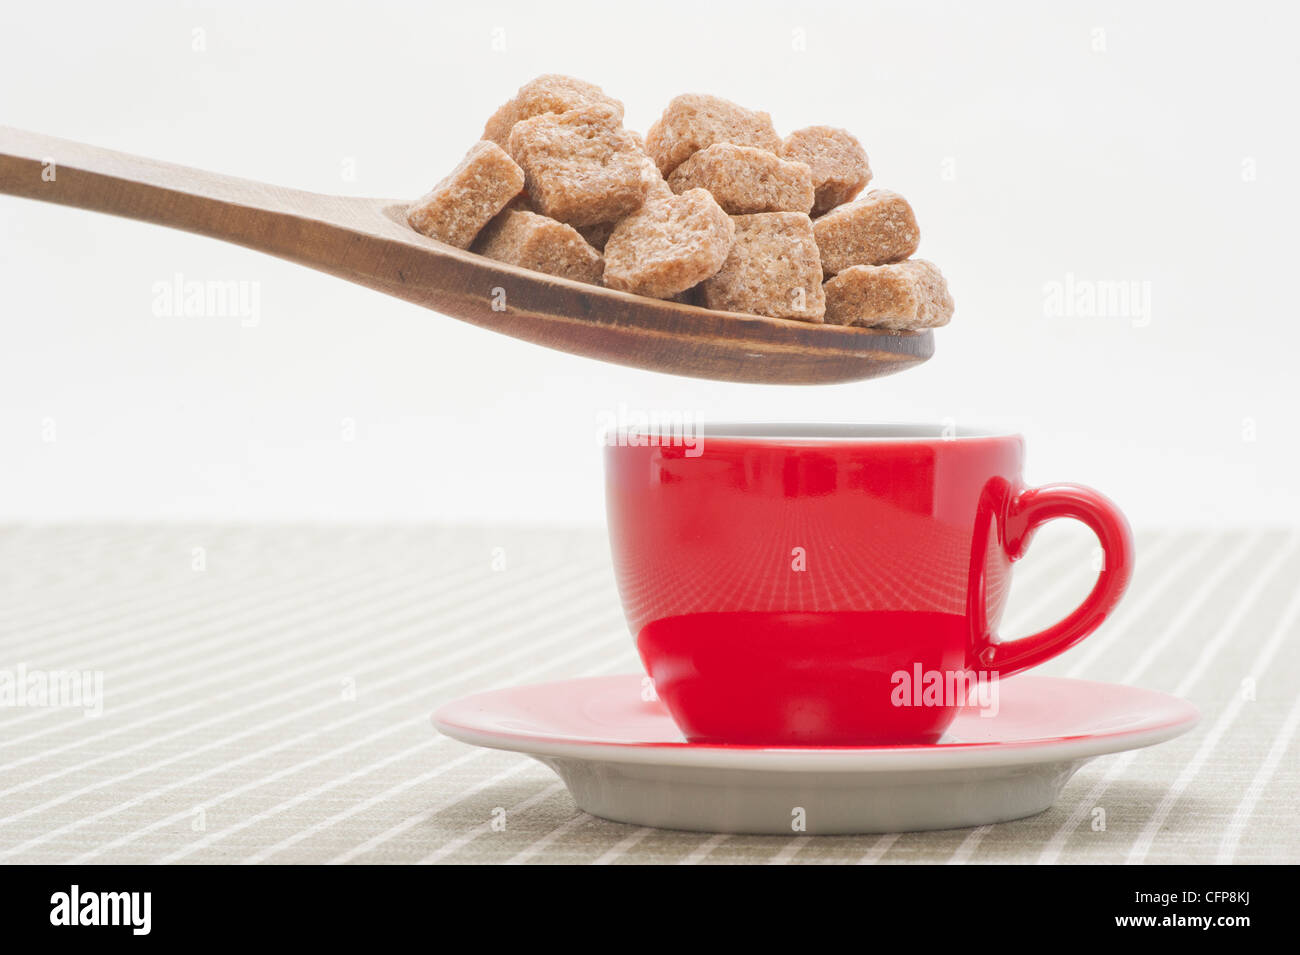 Übermaß an braunem Zucker Würfel in eine rote Kaffeetasse gestellt wird Stockfoto